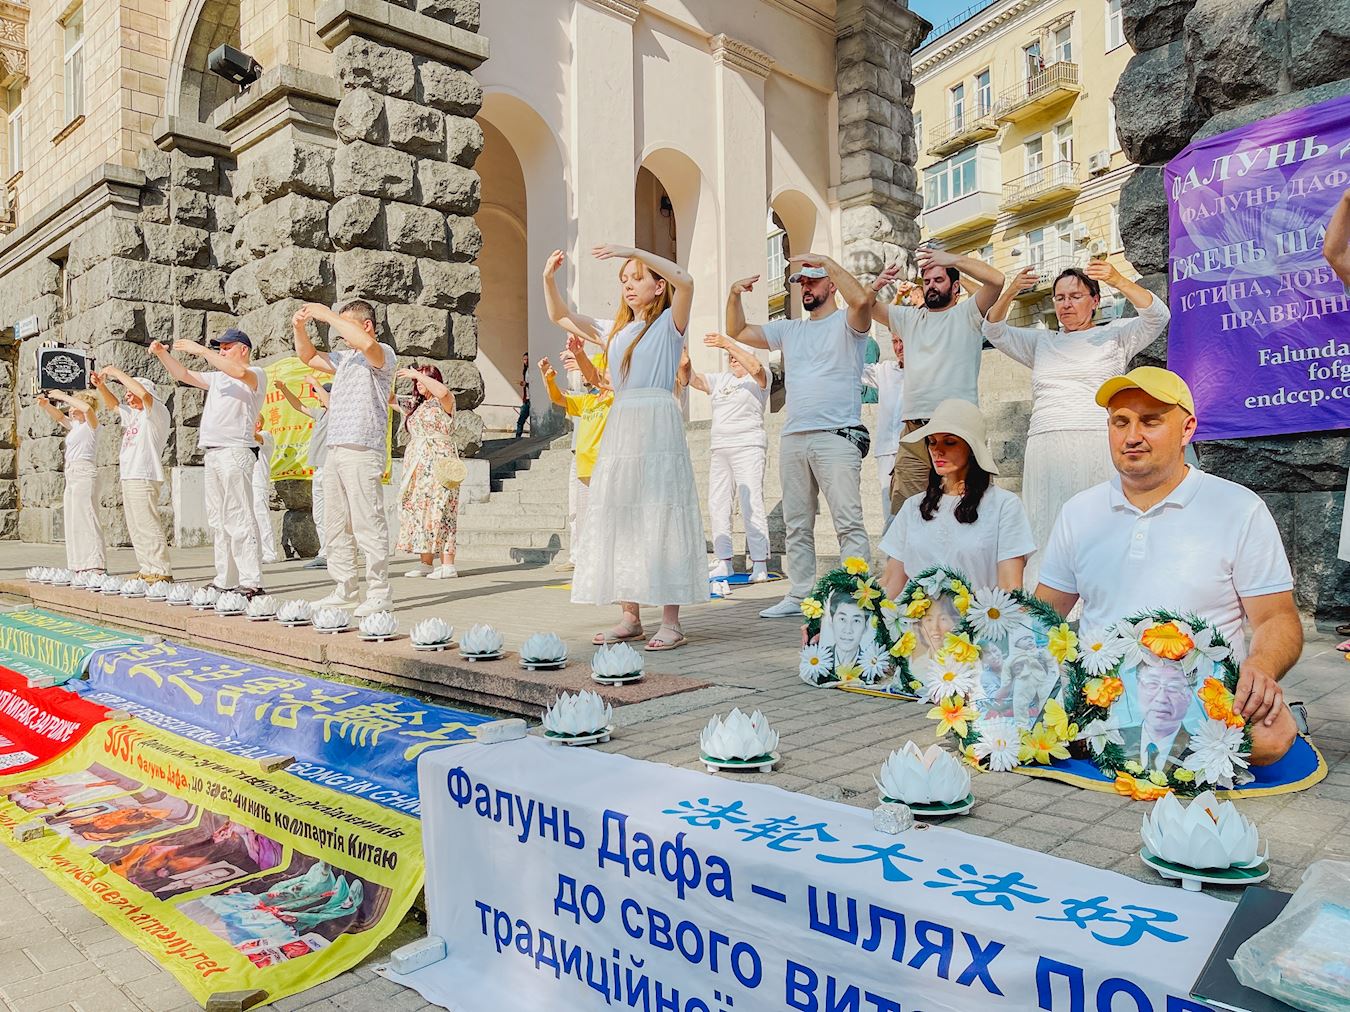 Image for article Ucrânia: Praticantes realizam evento em Kiev pedindo o fim da perseguição